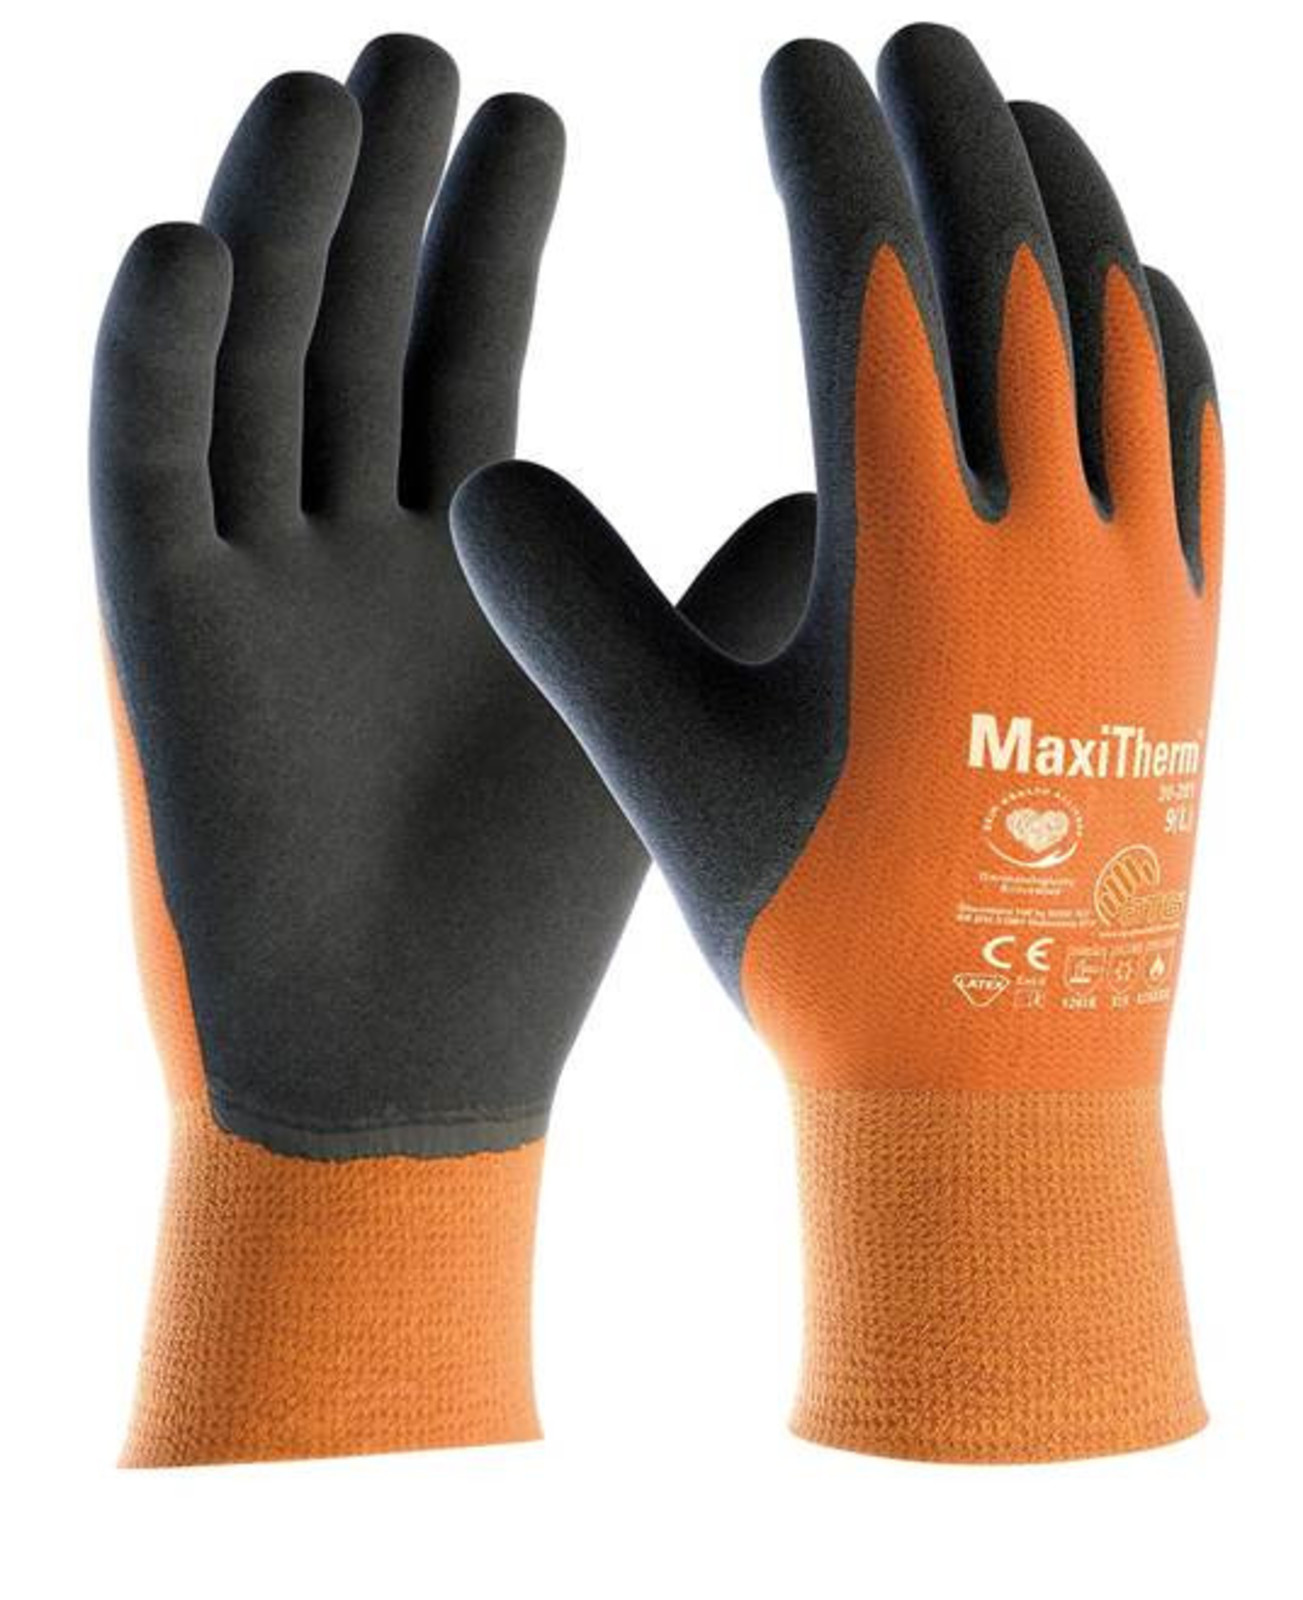 Zimné rukavice ATG  MaxiTherm 30-201 - veľkosť: 6/XS, farba: oranžová